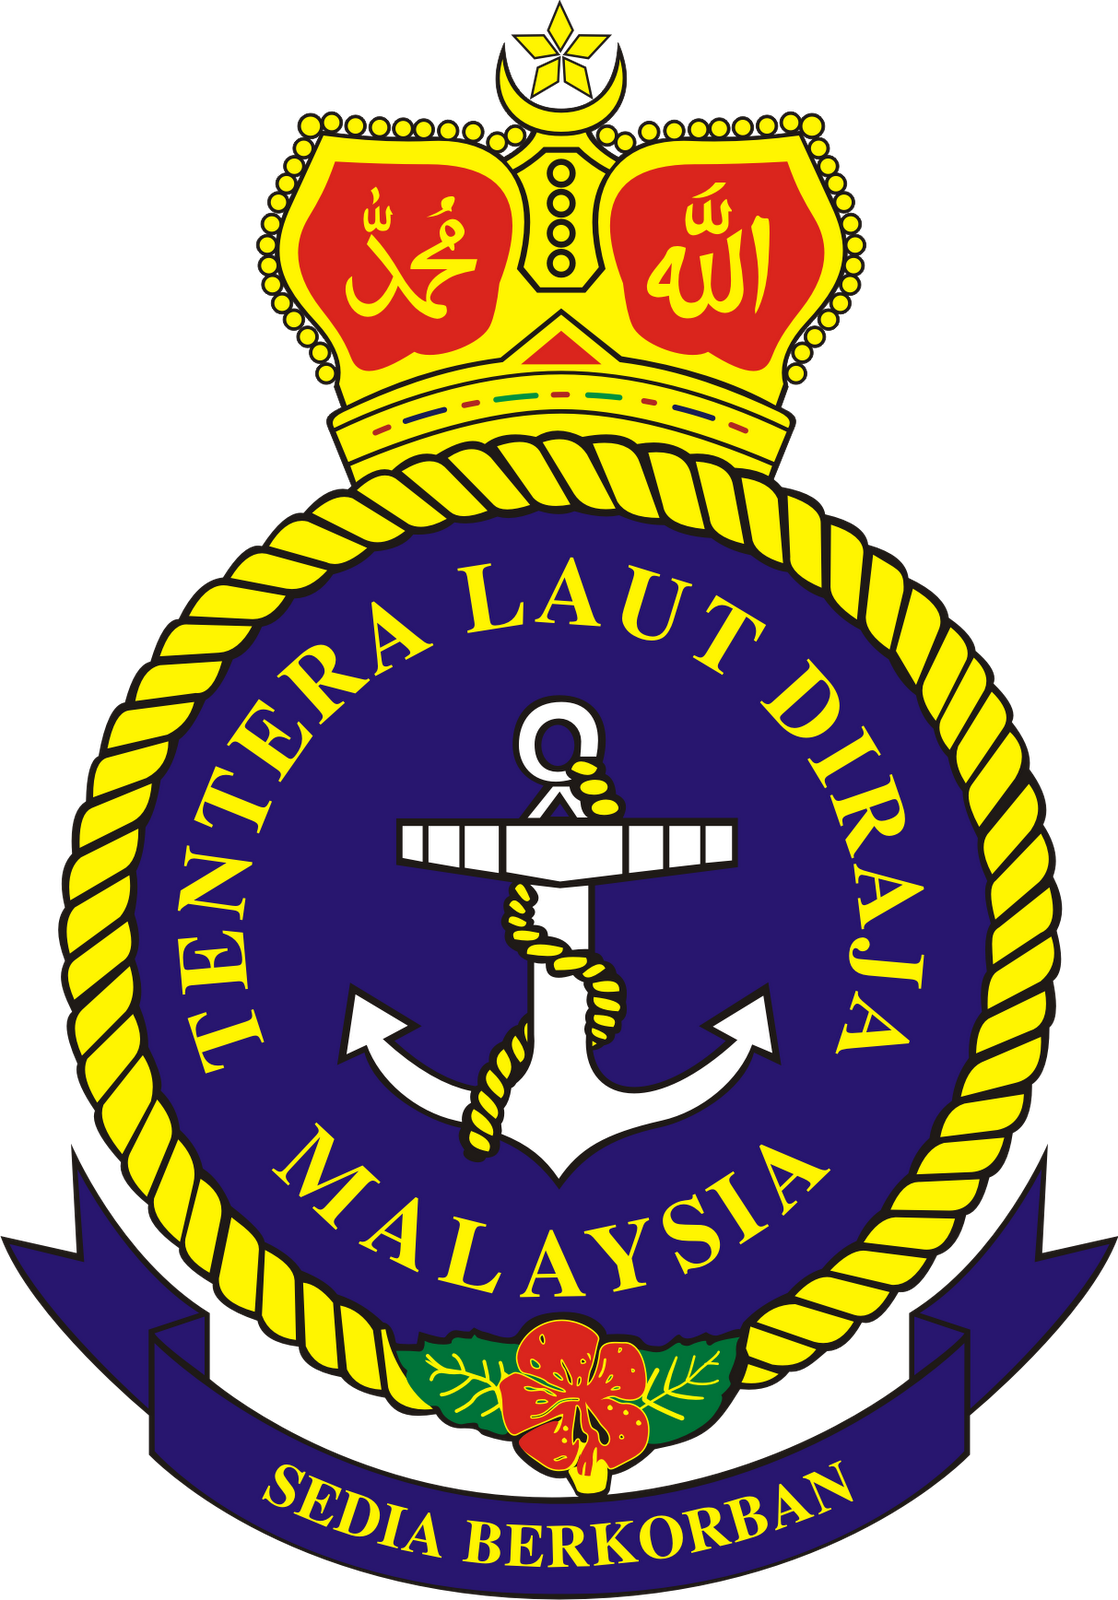 Logo Angkatan Darat, Laut dan Udara Malaysia - Ardi La ...